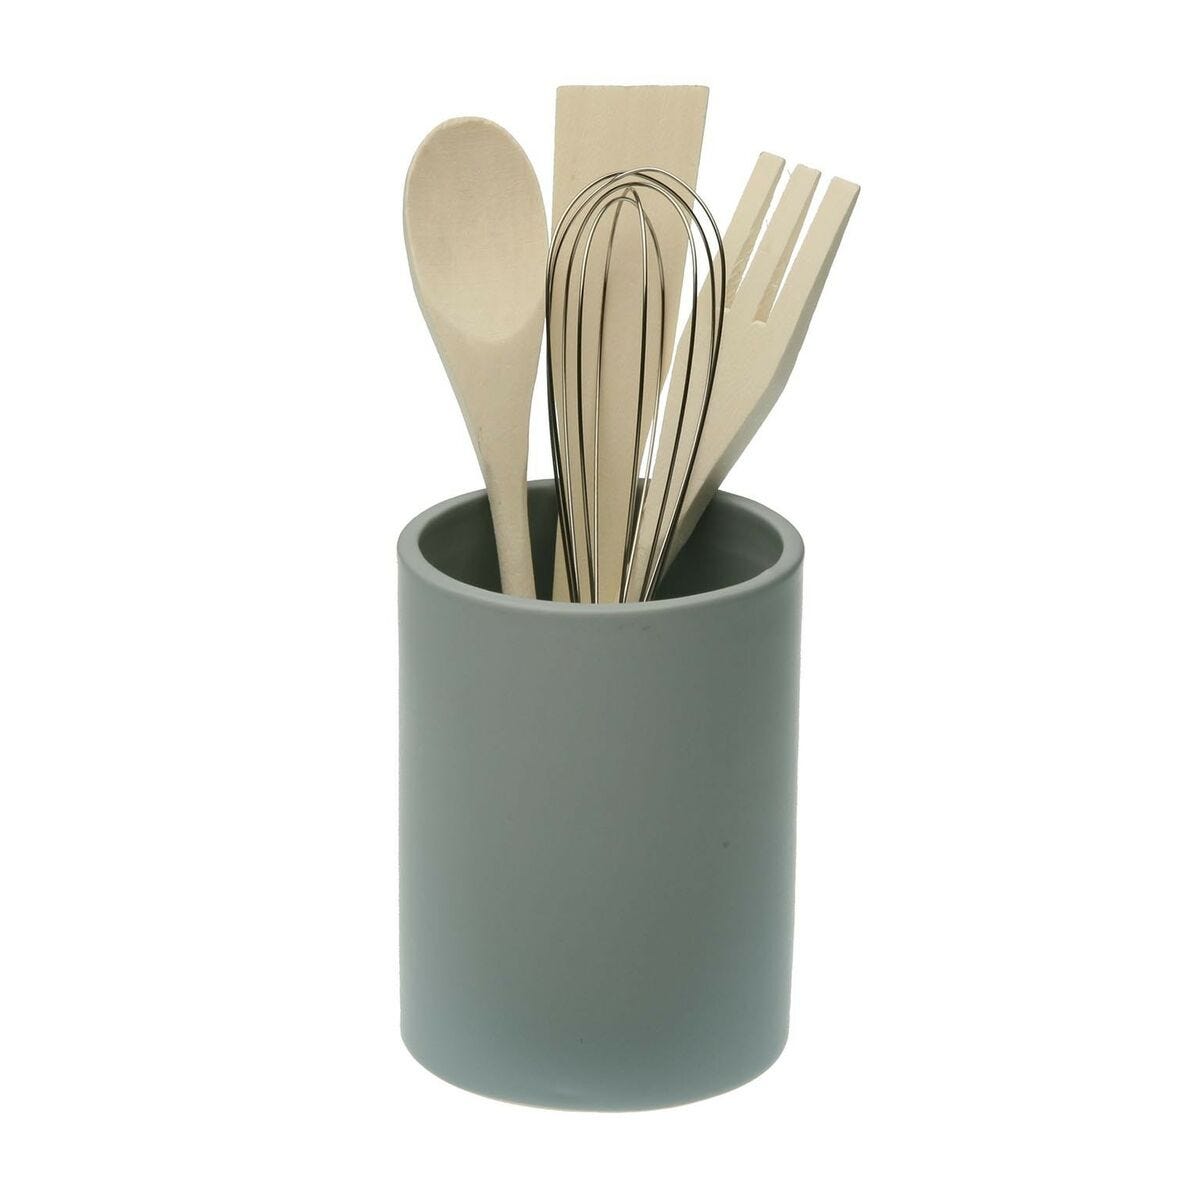 Porta utensilios de cocina Bote para utensilios cerámica y bambú